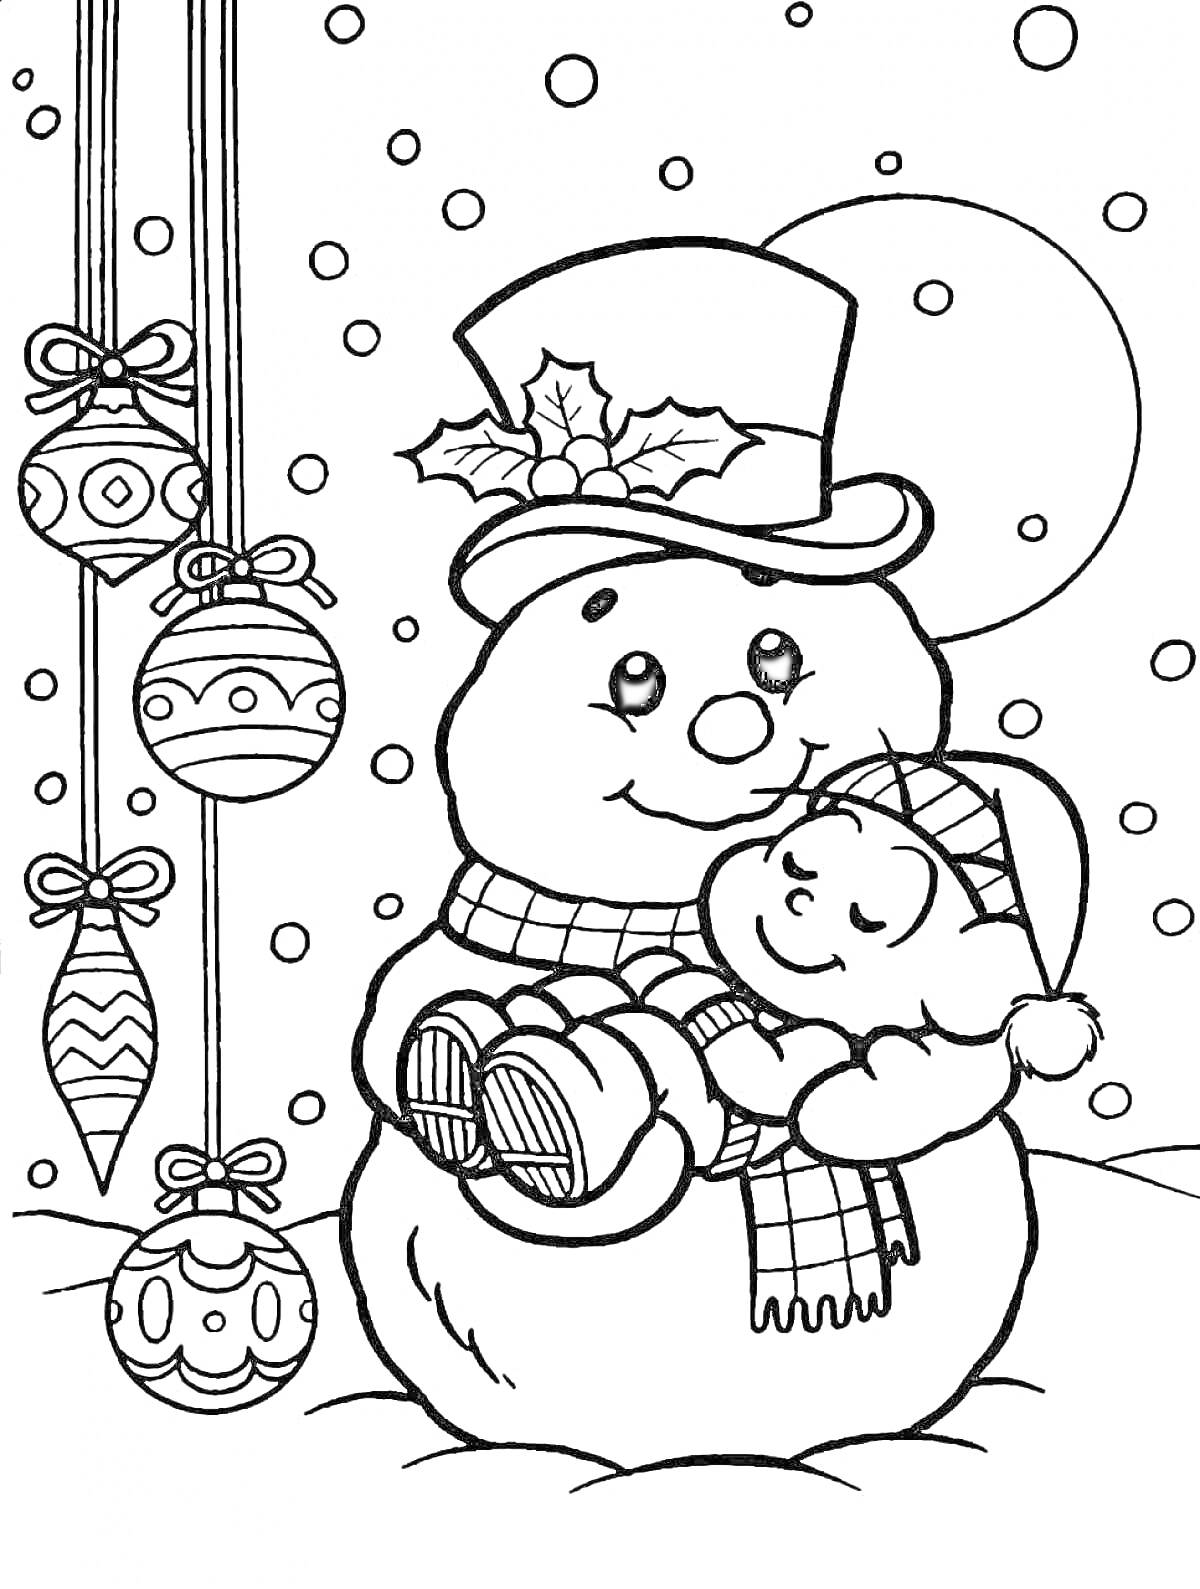 Раскраска Снеговик в цилиндре держит малыша возле ёлочных украшений и ночного неба